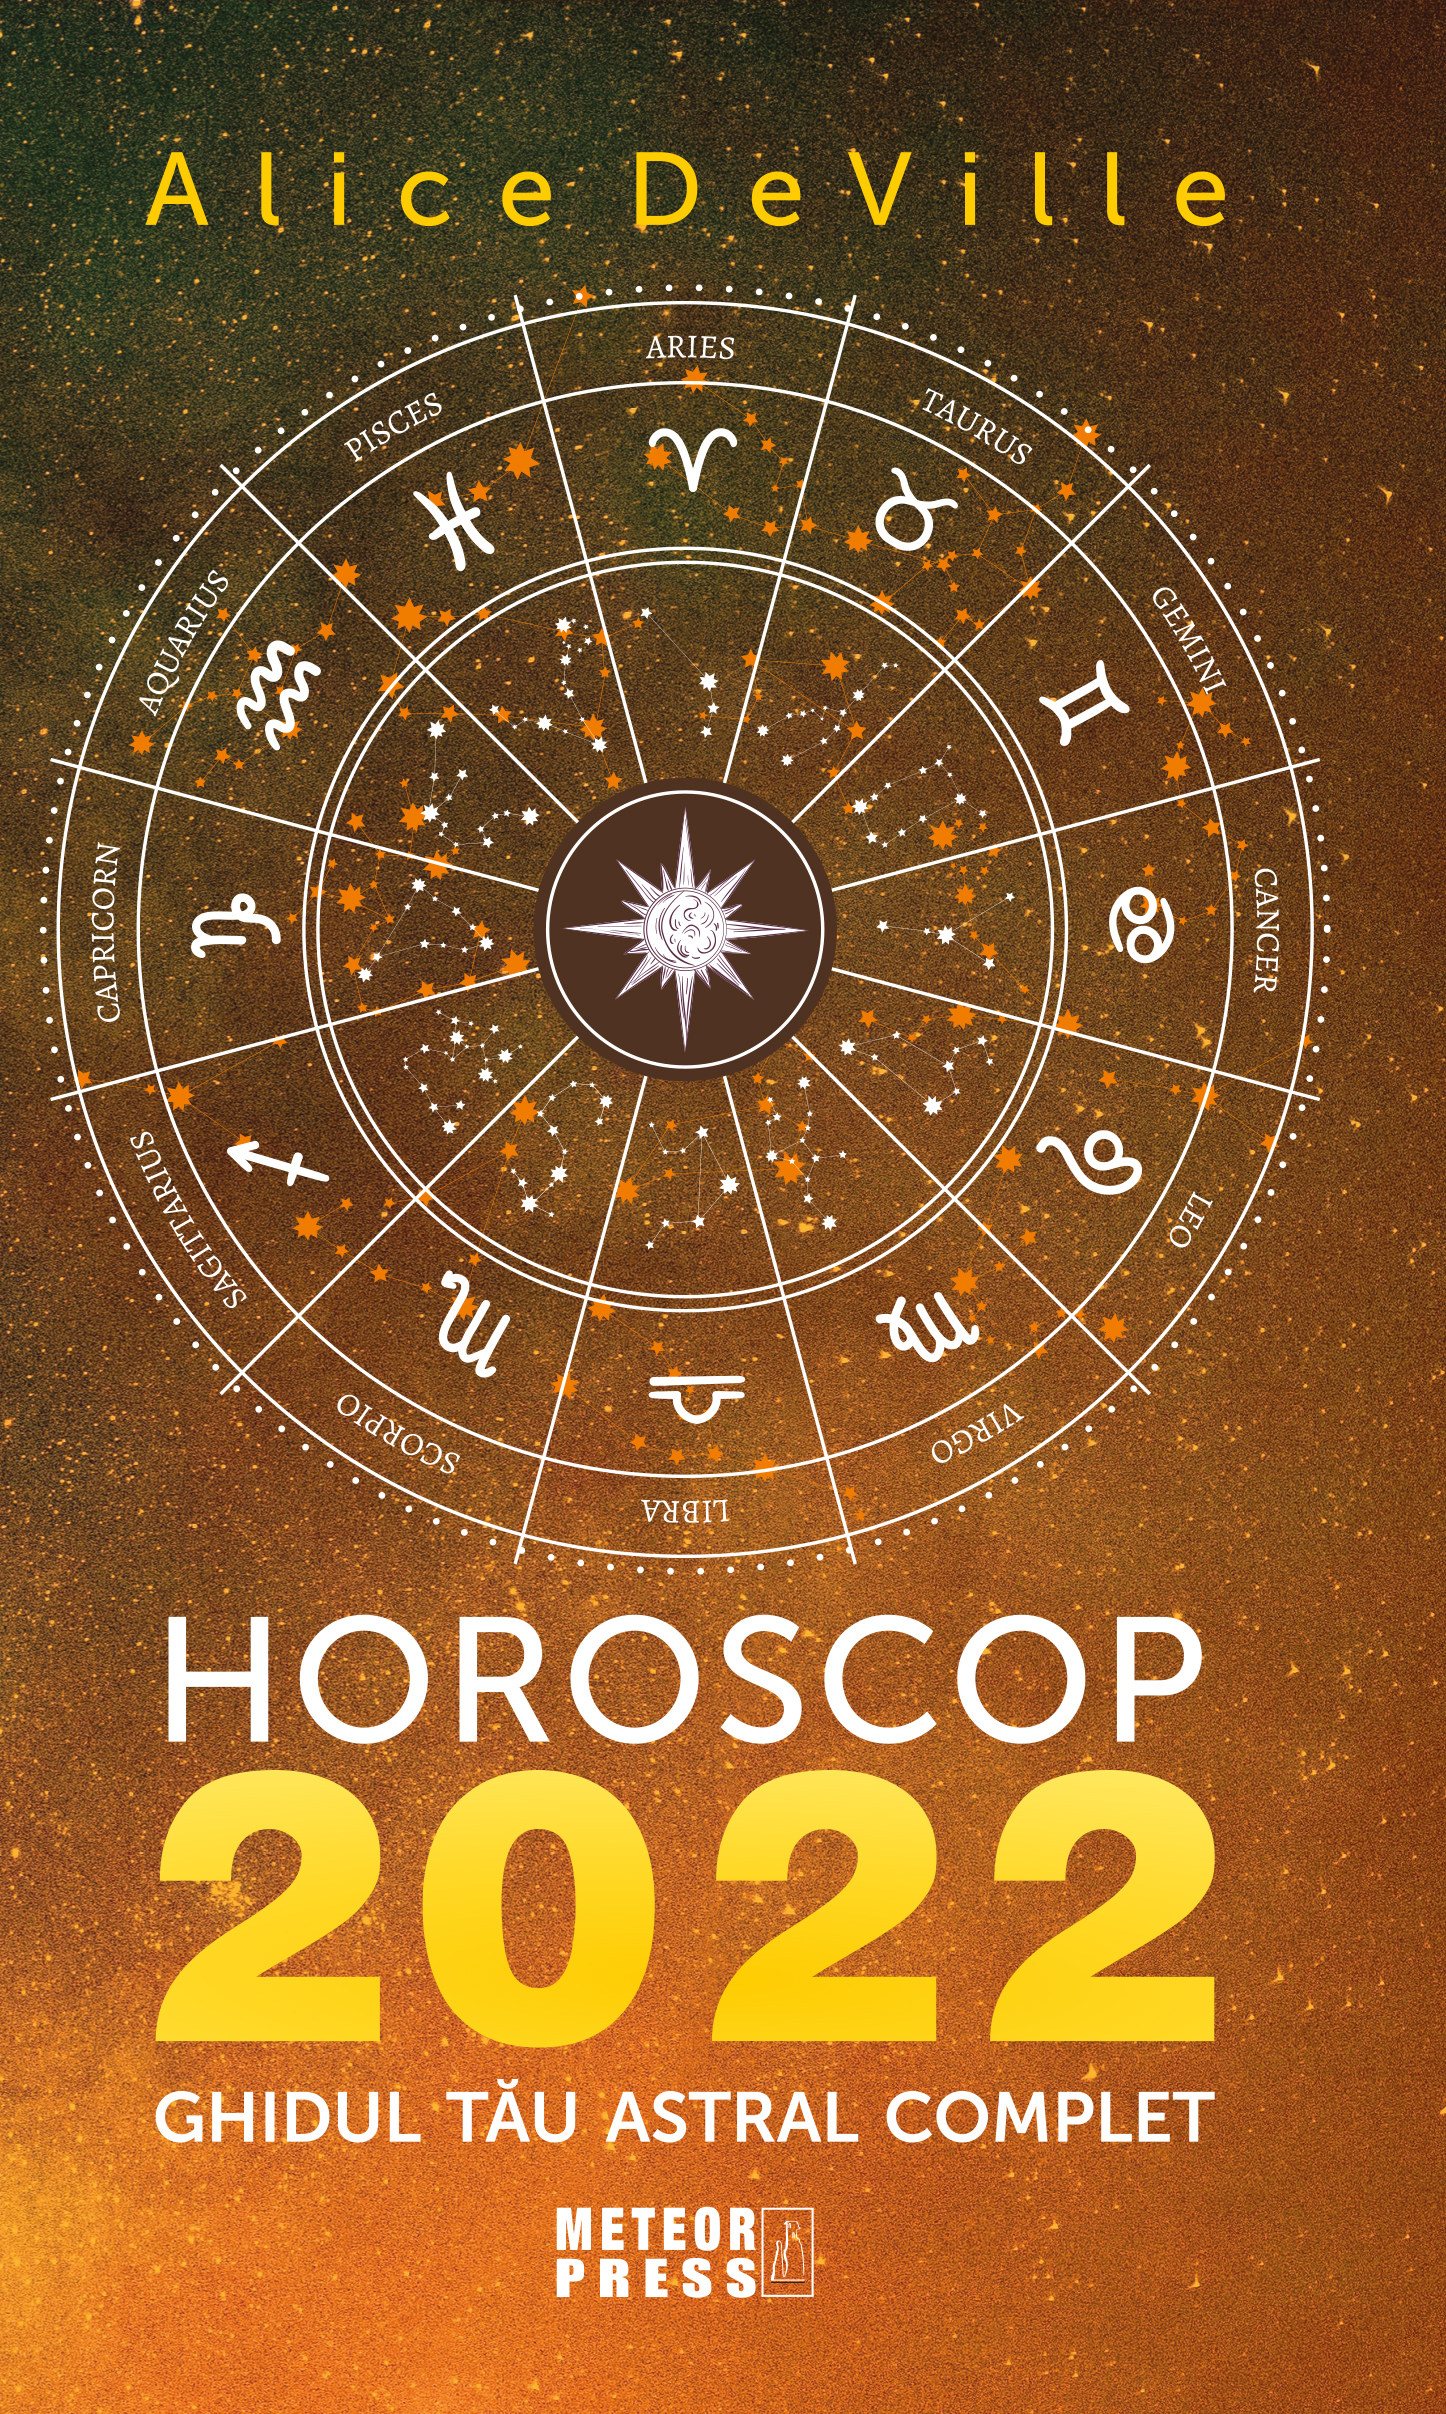 Horoscop 2022 | Alice DeVille de la carturesti imagine 2021